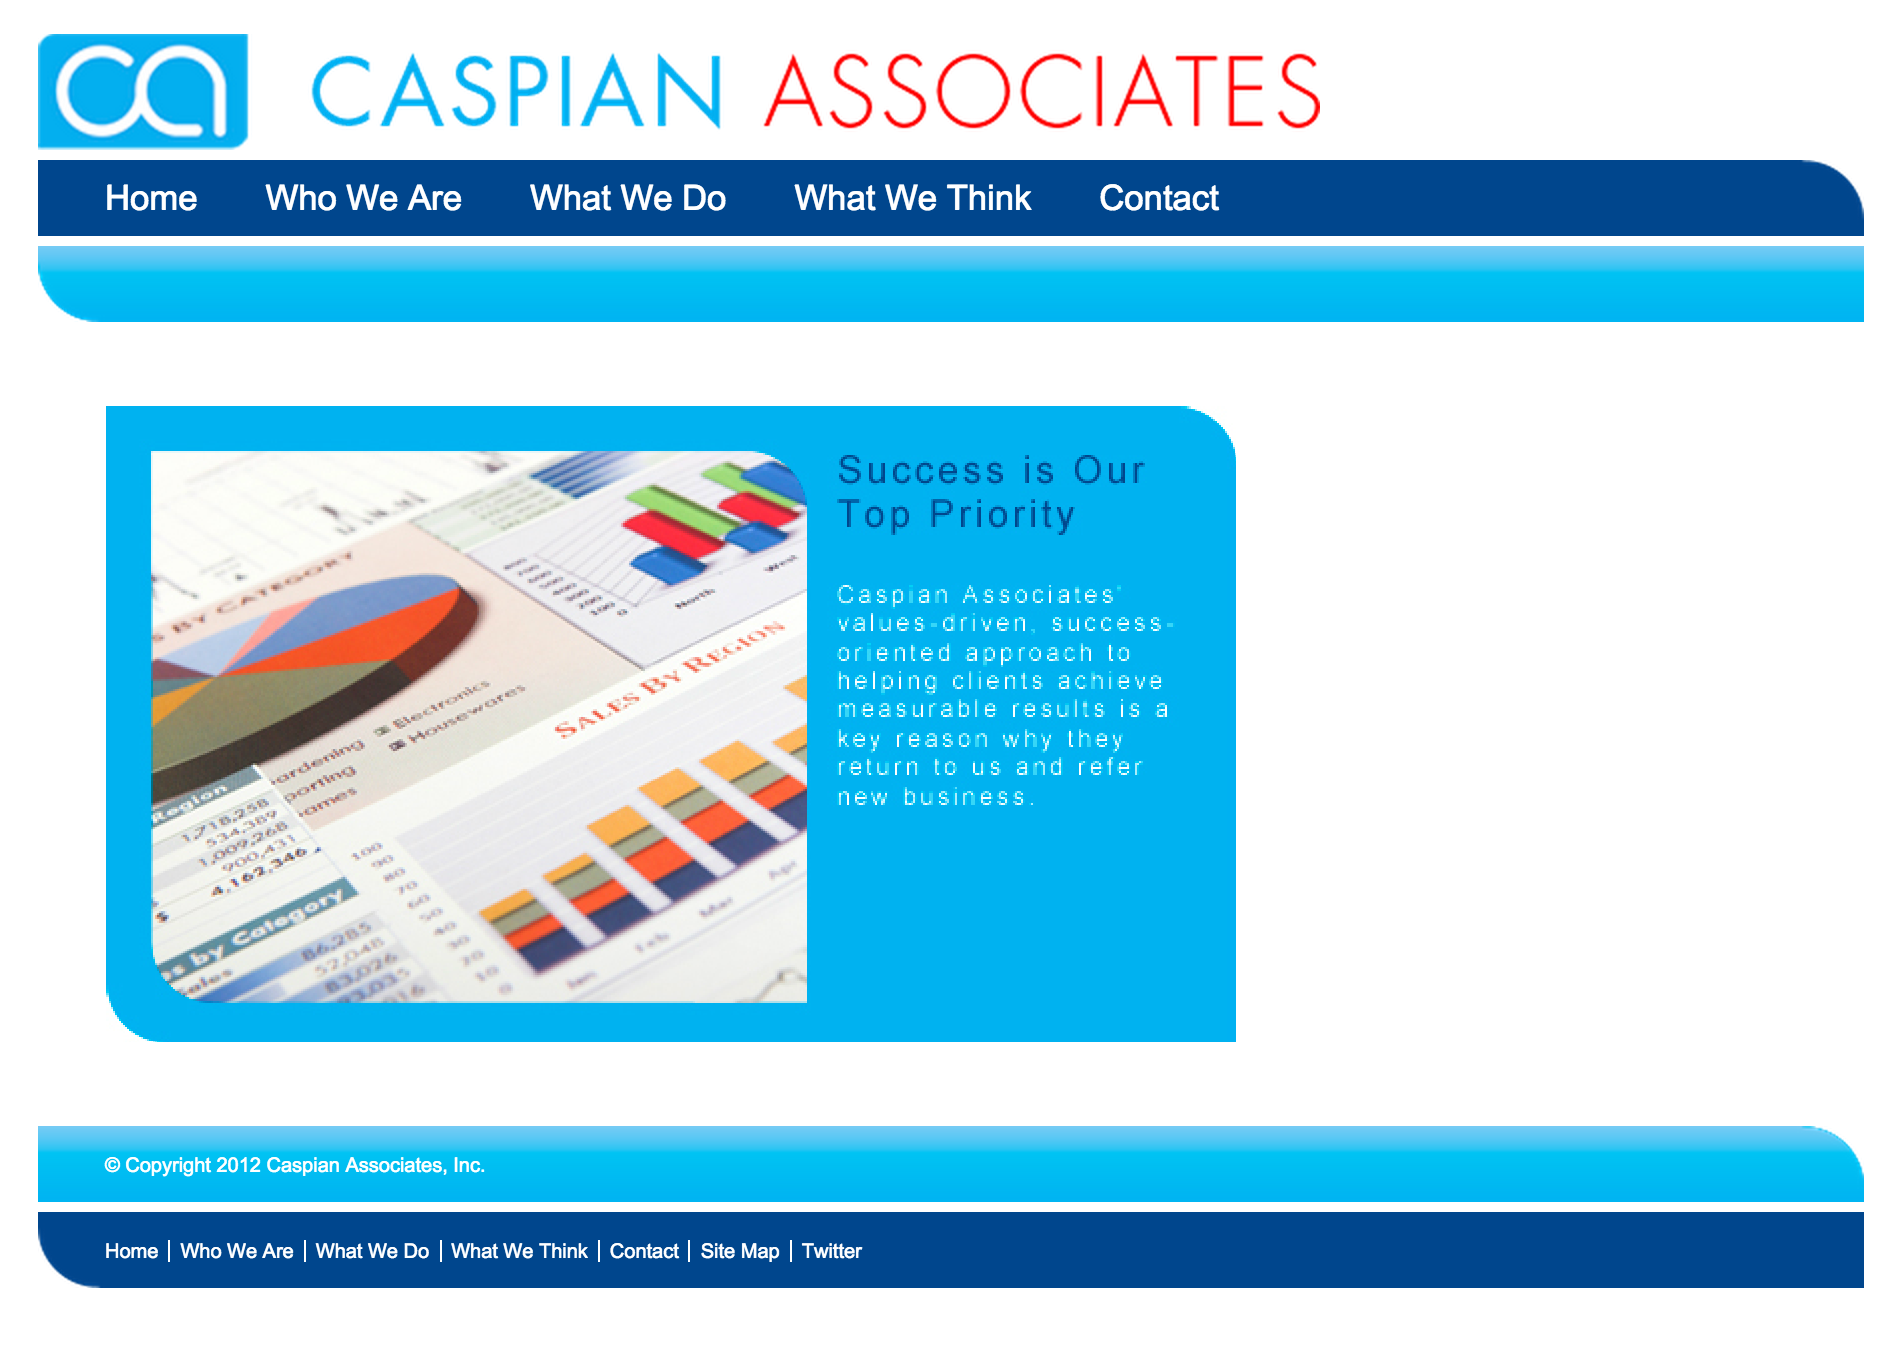 http://www.caspian-associates.com/